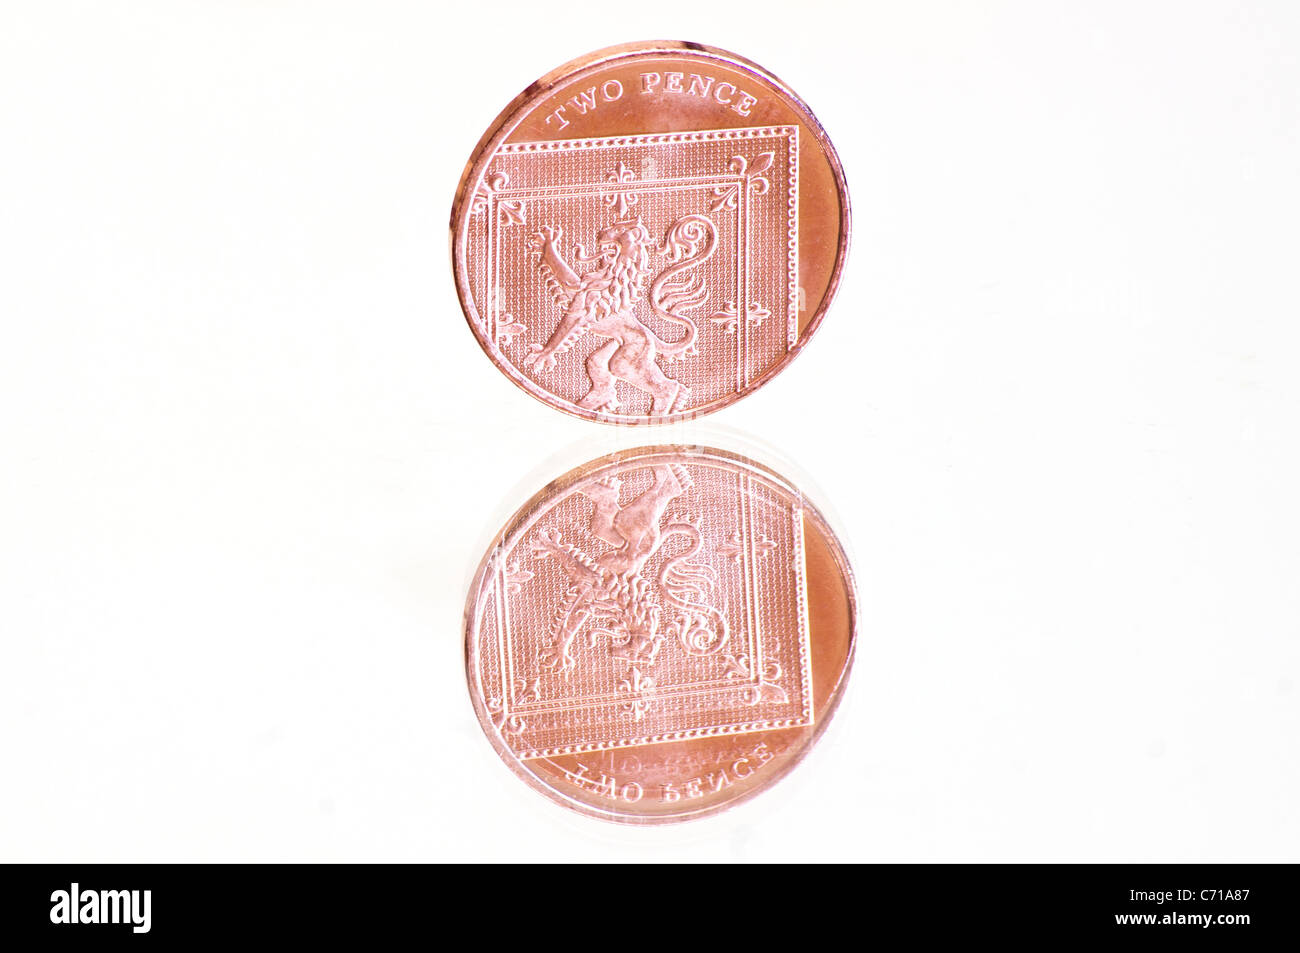 Eine einzige zwei Pence Münze reflektiert in einem Spiegel Stockfoto